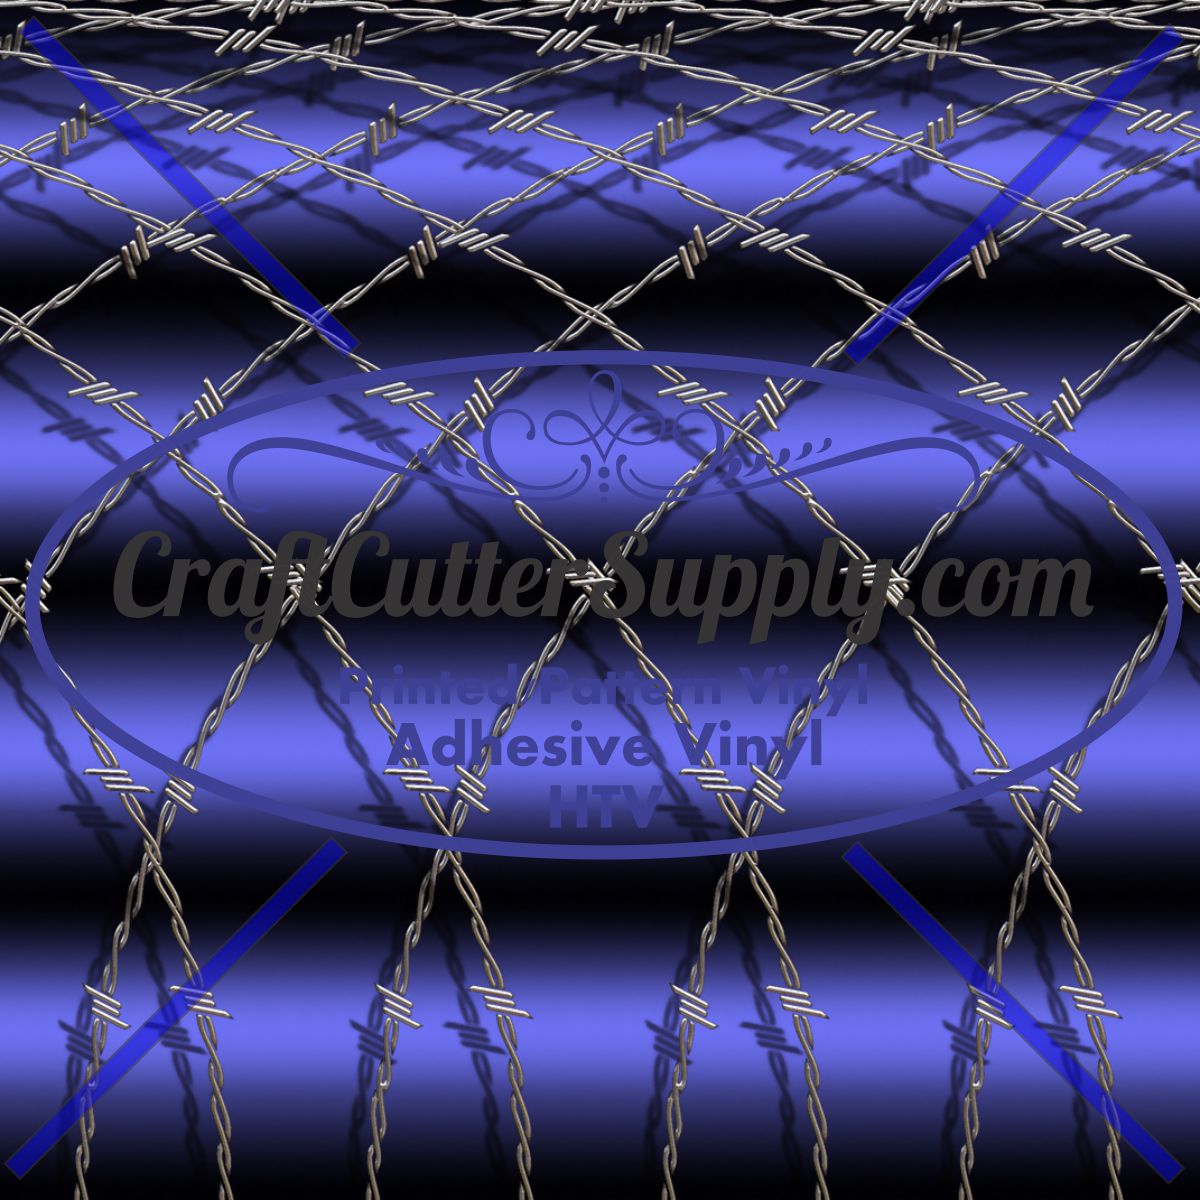 Arched Wire Blue 12x12 - CraftCutterSupply.com